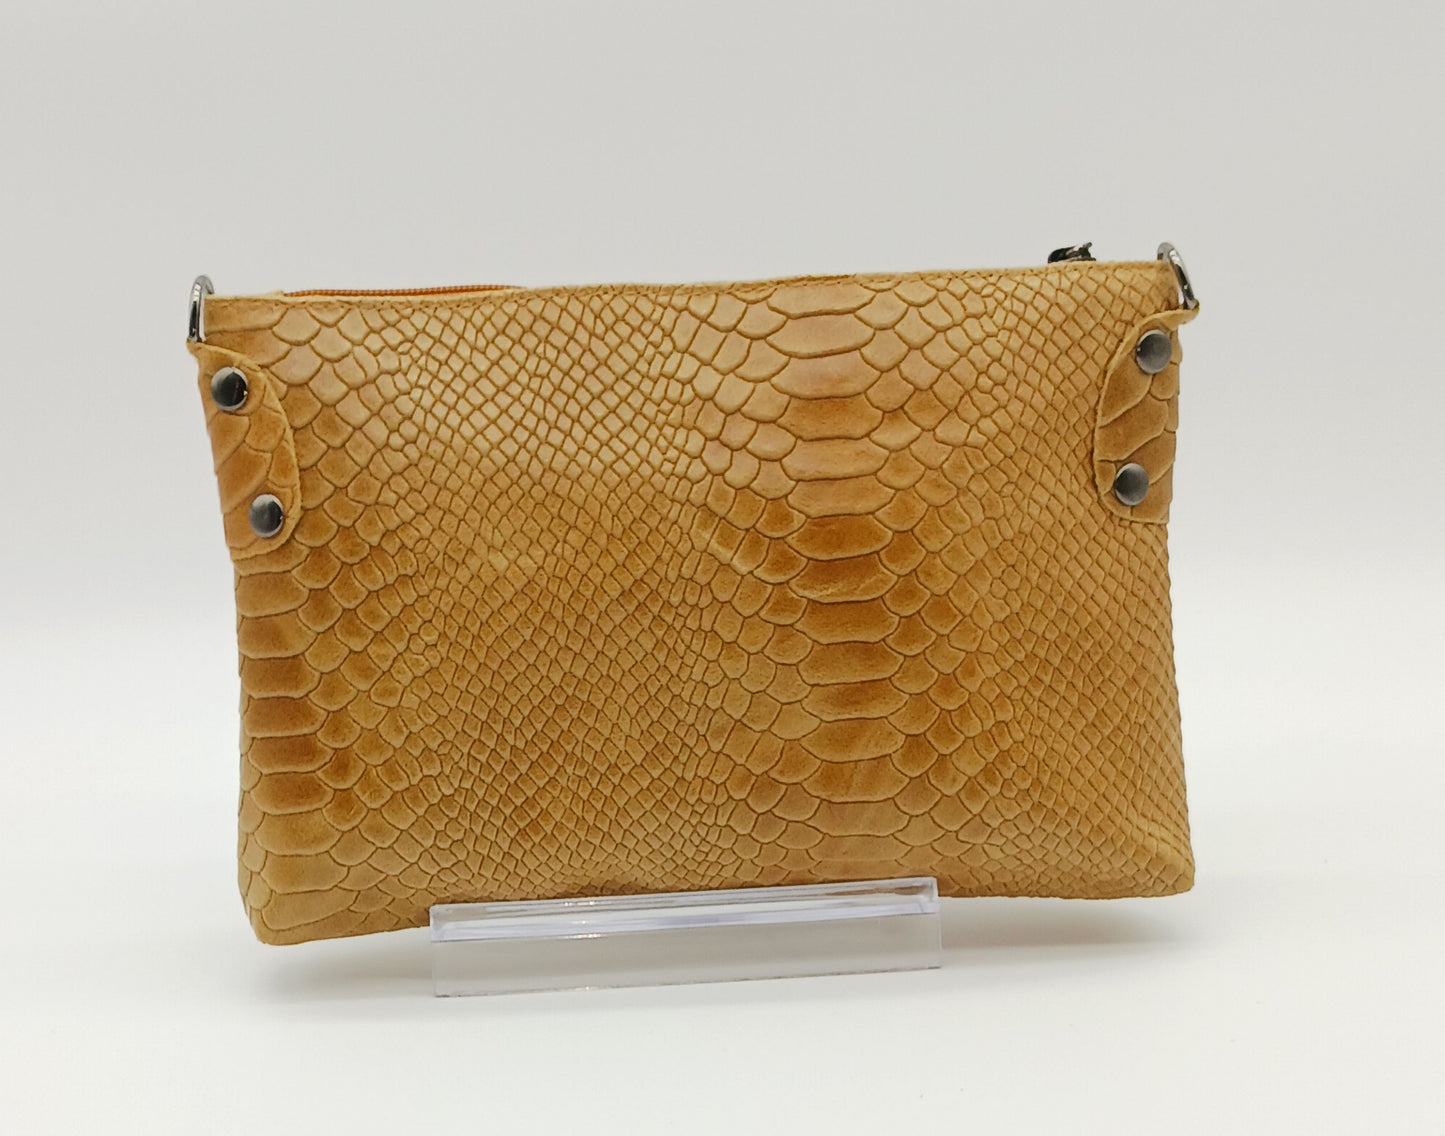 Snake Embossed Genuine Leather Crossbody Handbag - Cognac Brown – Made In Italy